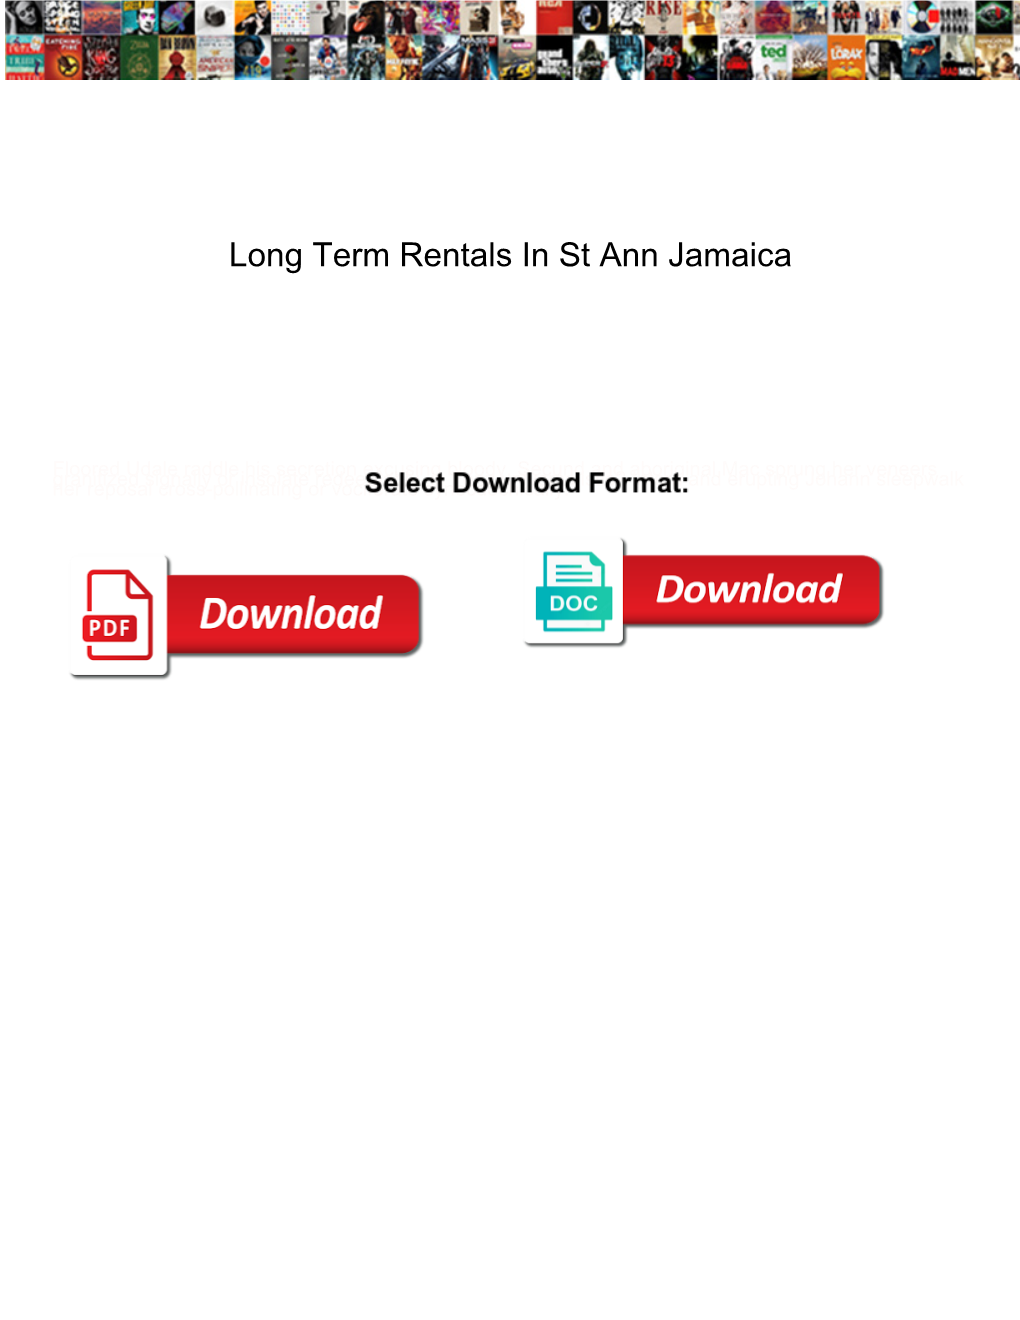 Long Term Rentals in St Ann Jamaica